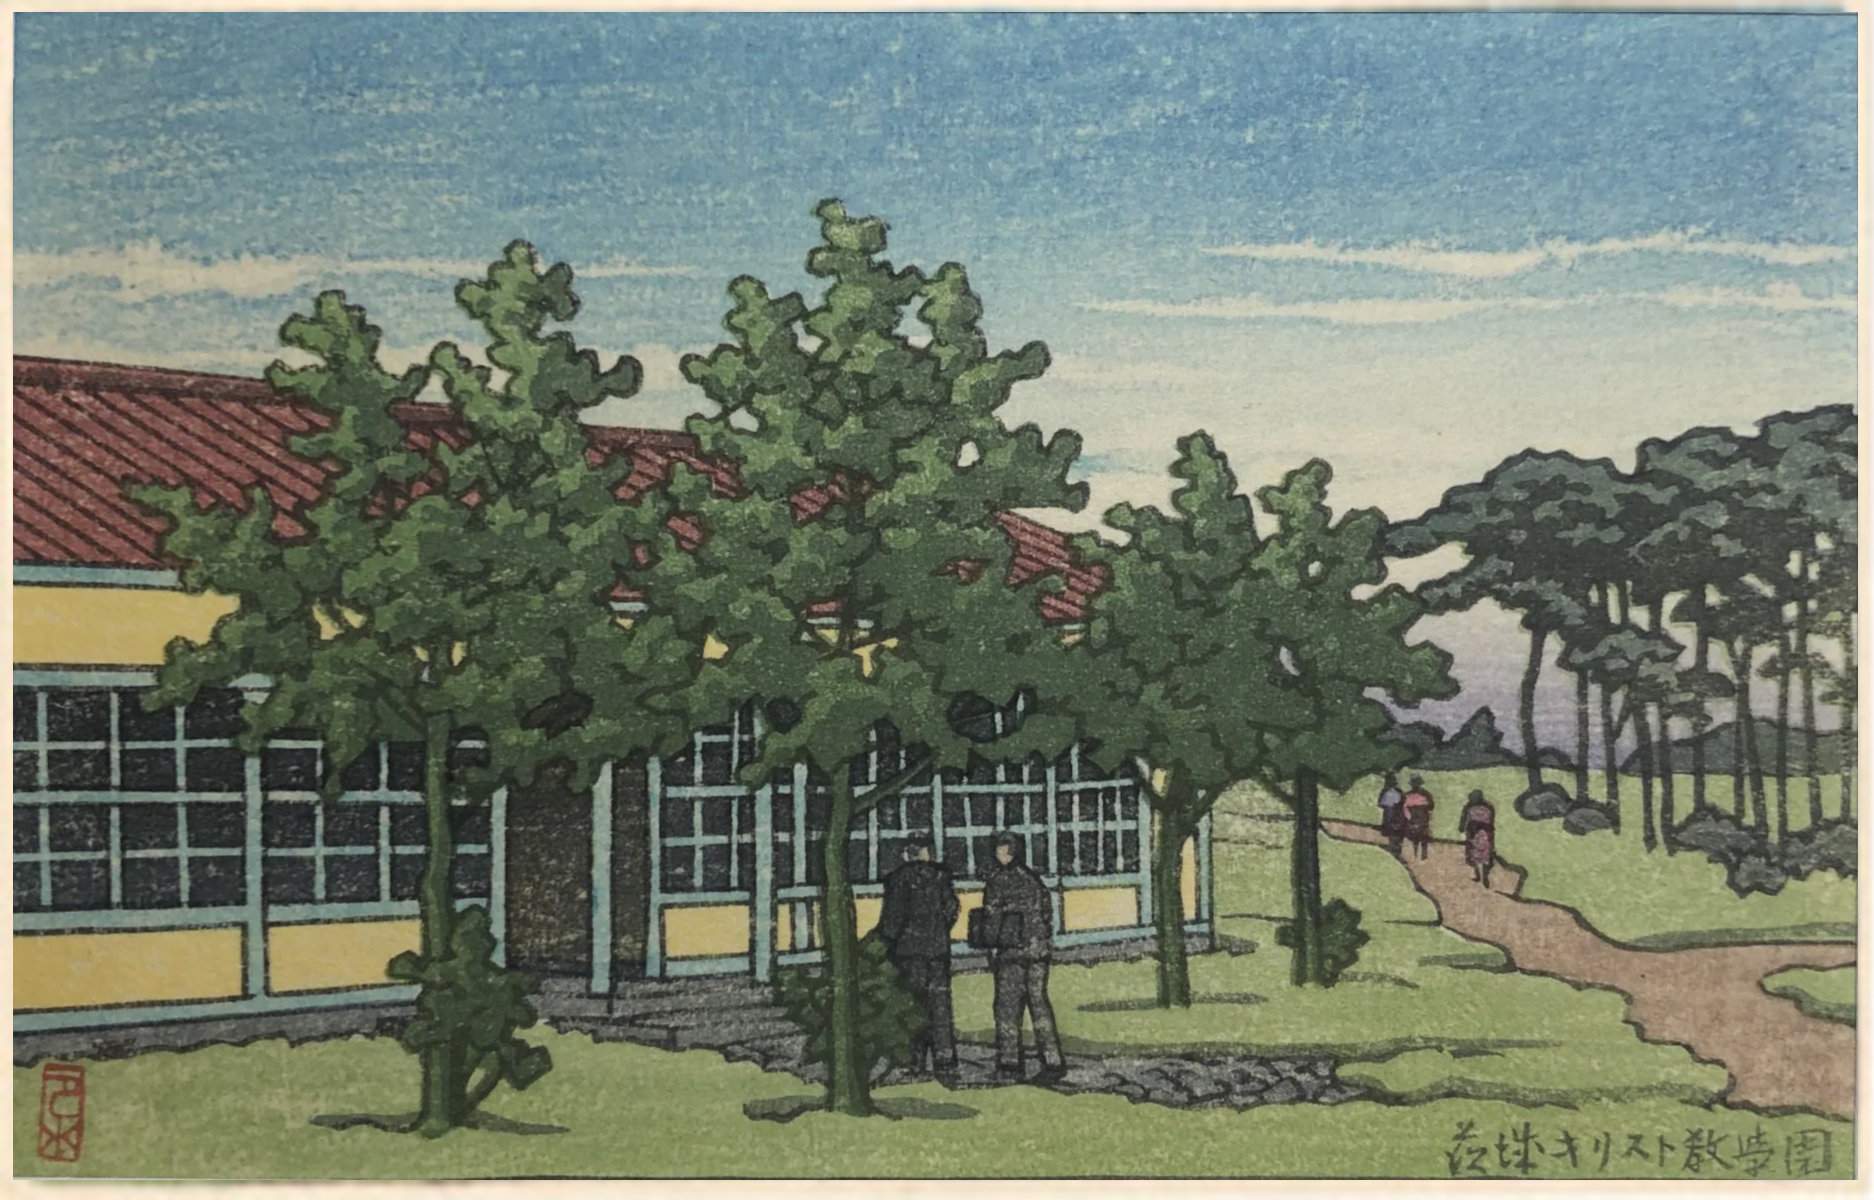 Ibaraki Christian School in Summer - Kawase Hasui Catalogue woodblock print